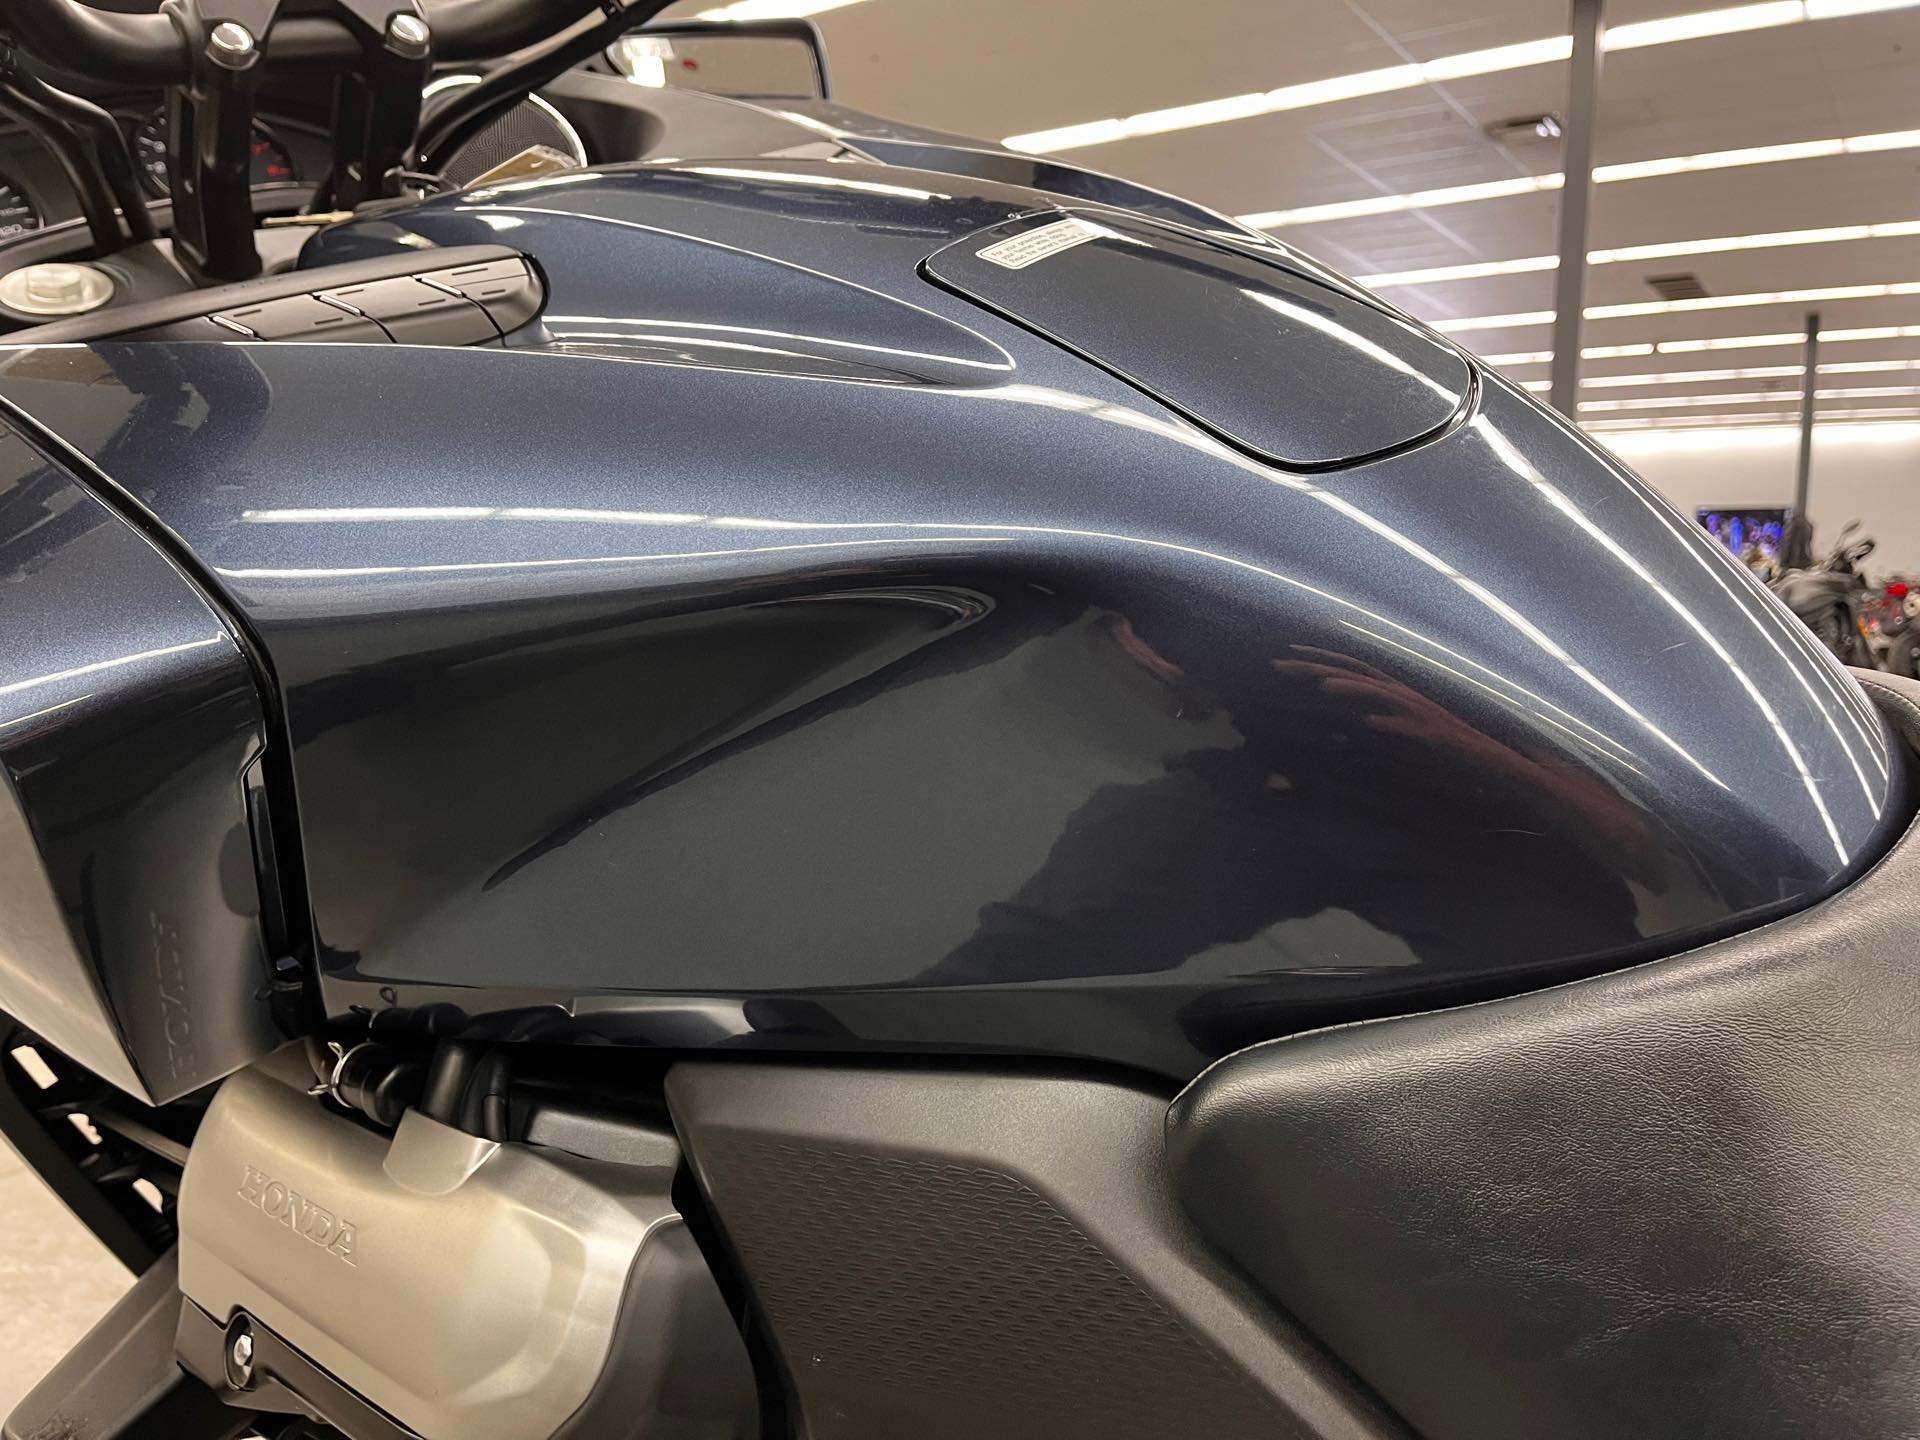 2014 Honda CTX 1300 at Aces Motorcycles - Denver